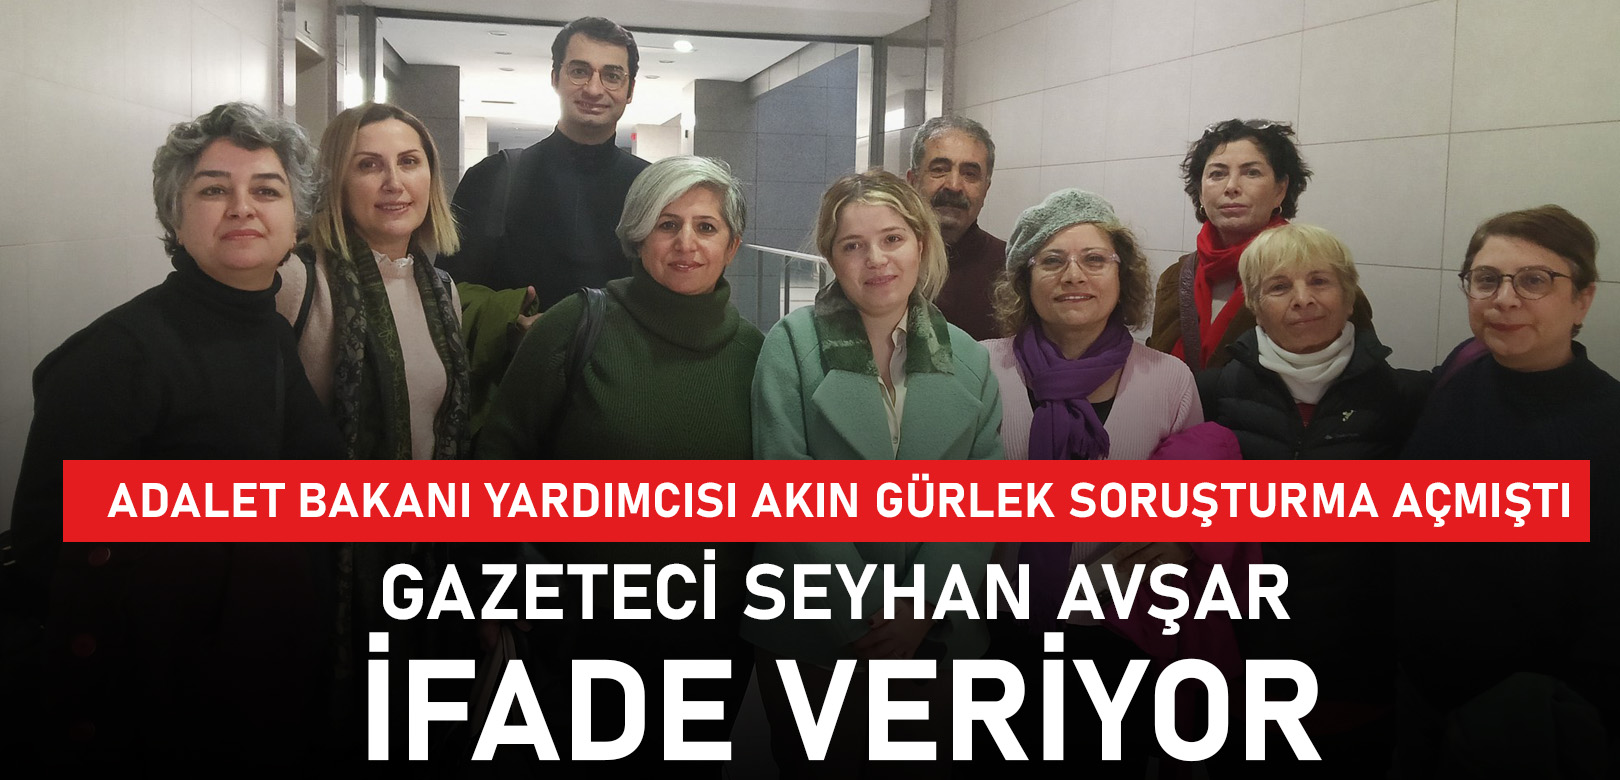 Gazeteci Seyhan Avşar'a yurt dışı yasağı